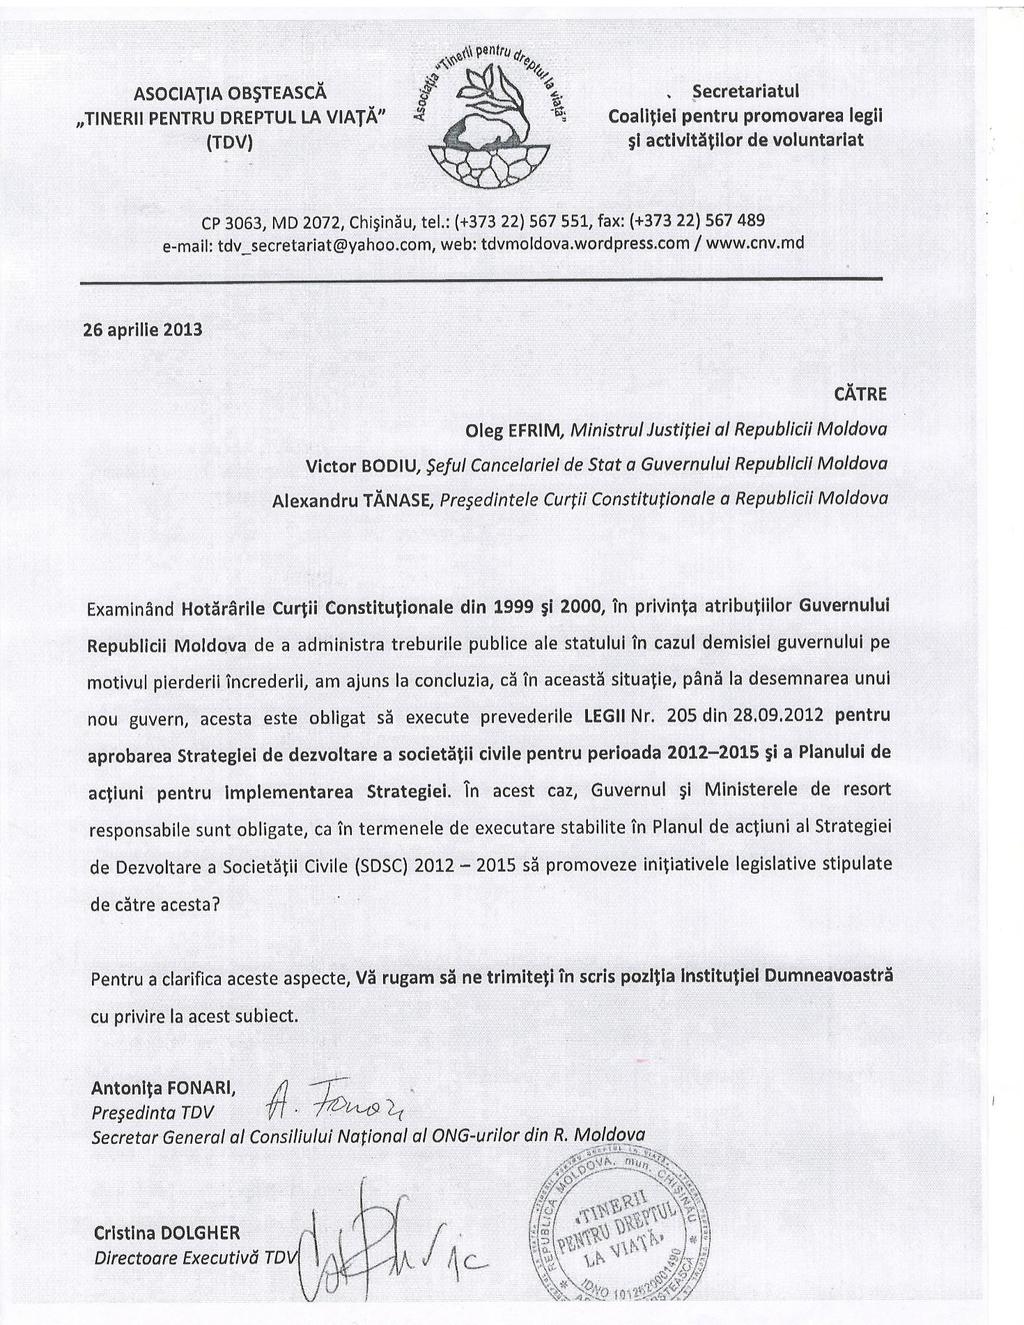 ANEXA 2 Scrisoare adresată de TDV Ministerului